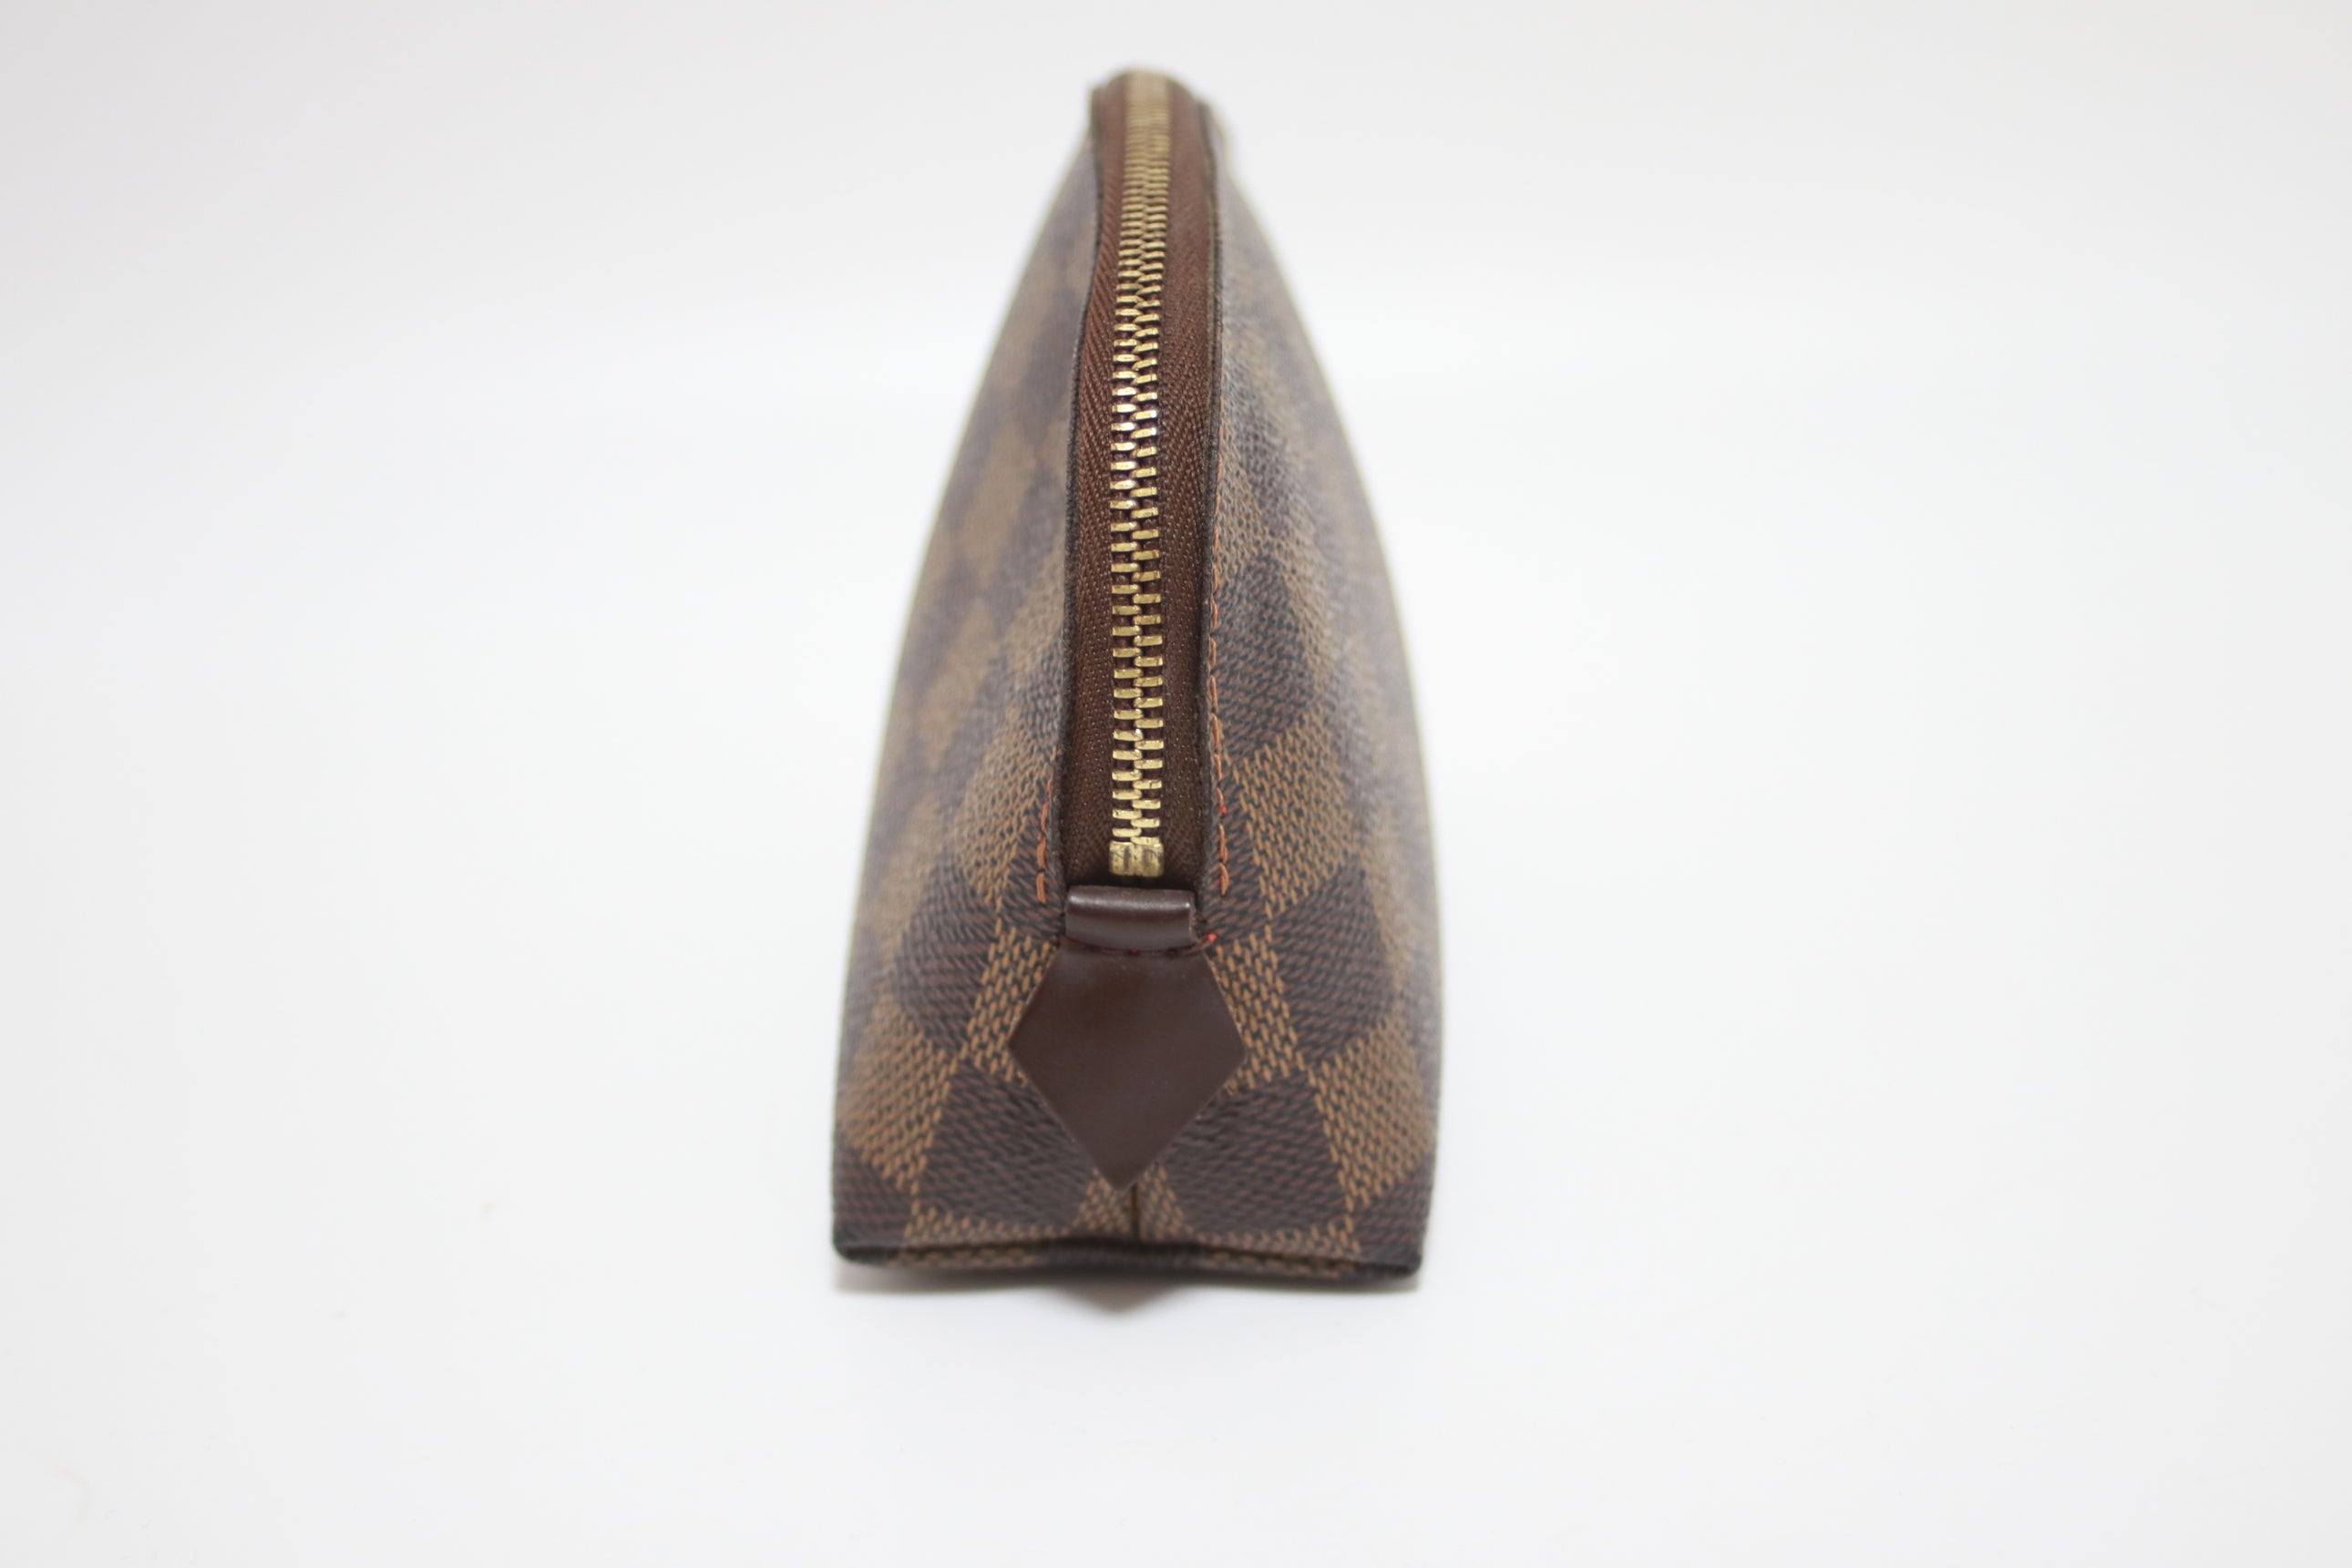 Louis Vuitton Deauville Handbag. Used.